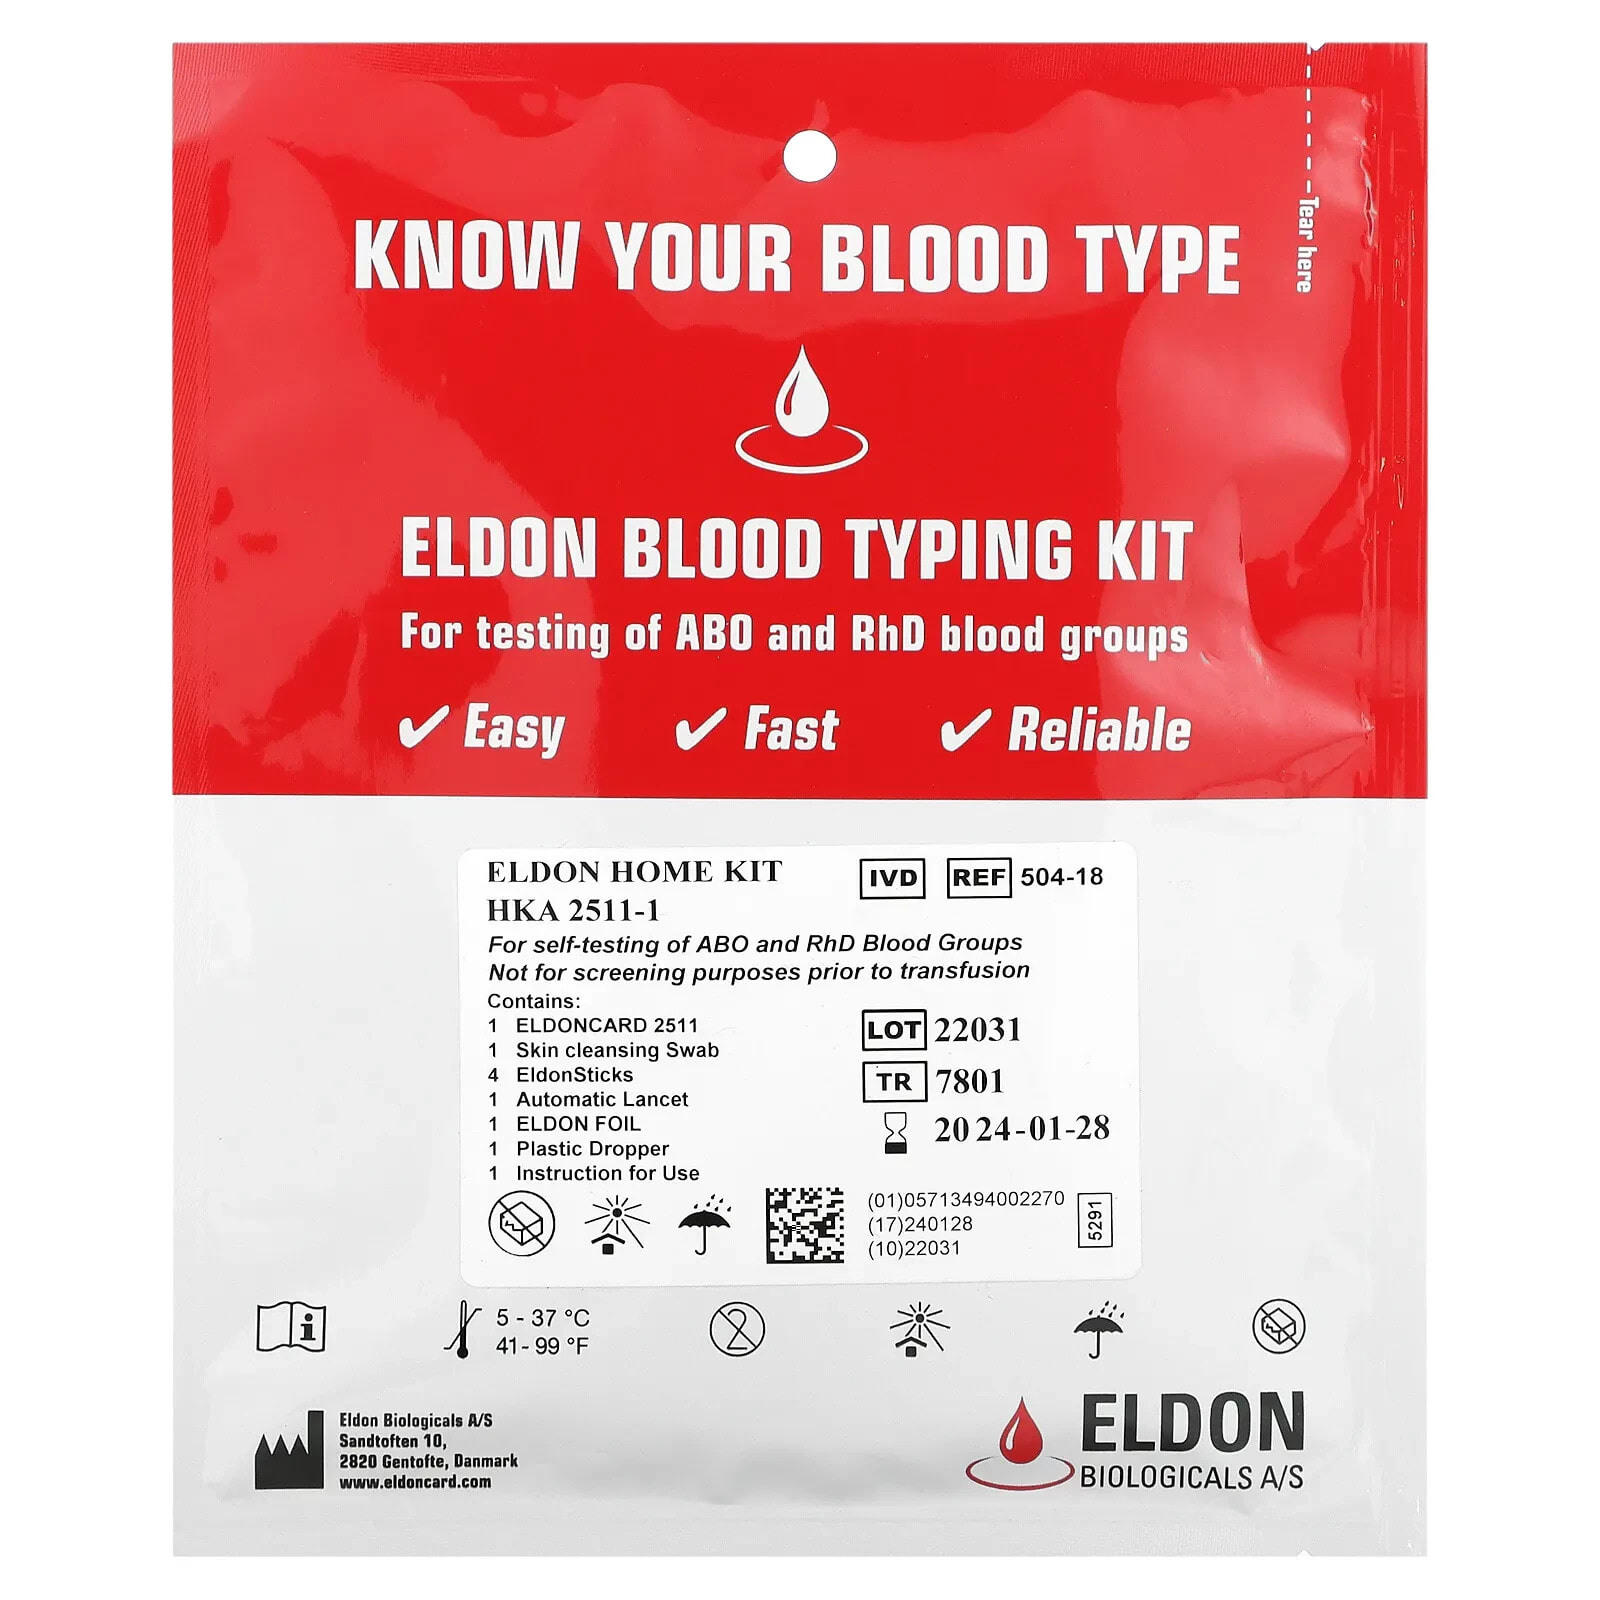 D'Adamo Personalized Nutrition, Eldon, Набор для определения типа крови, 1 набор для самостоятельного тестирования